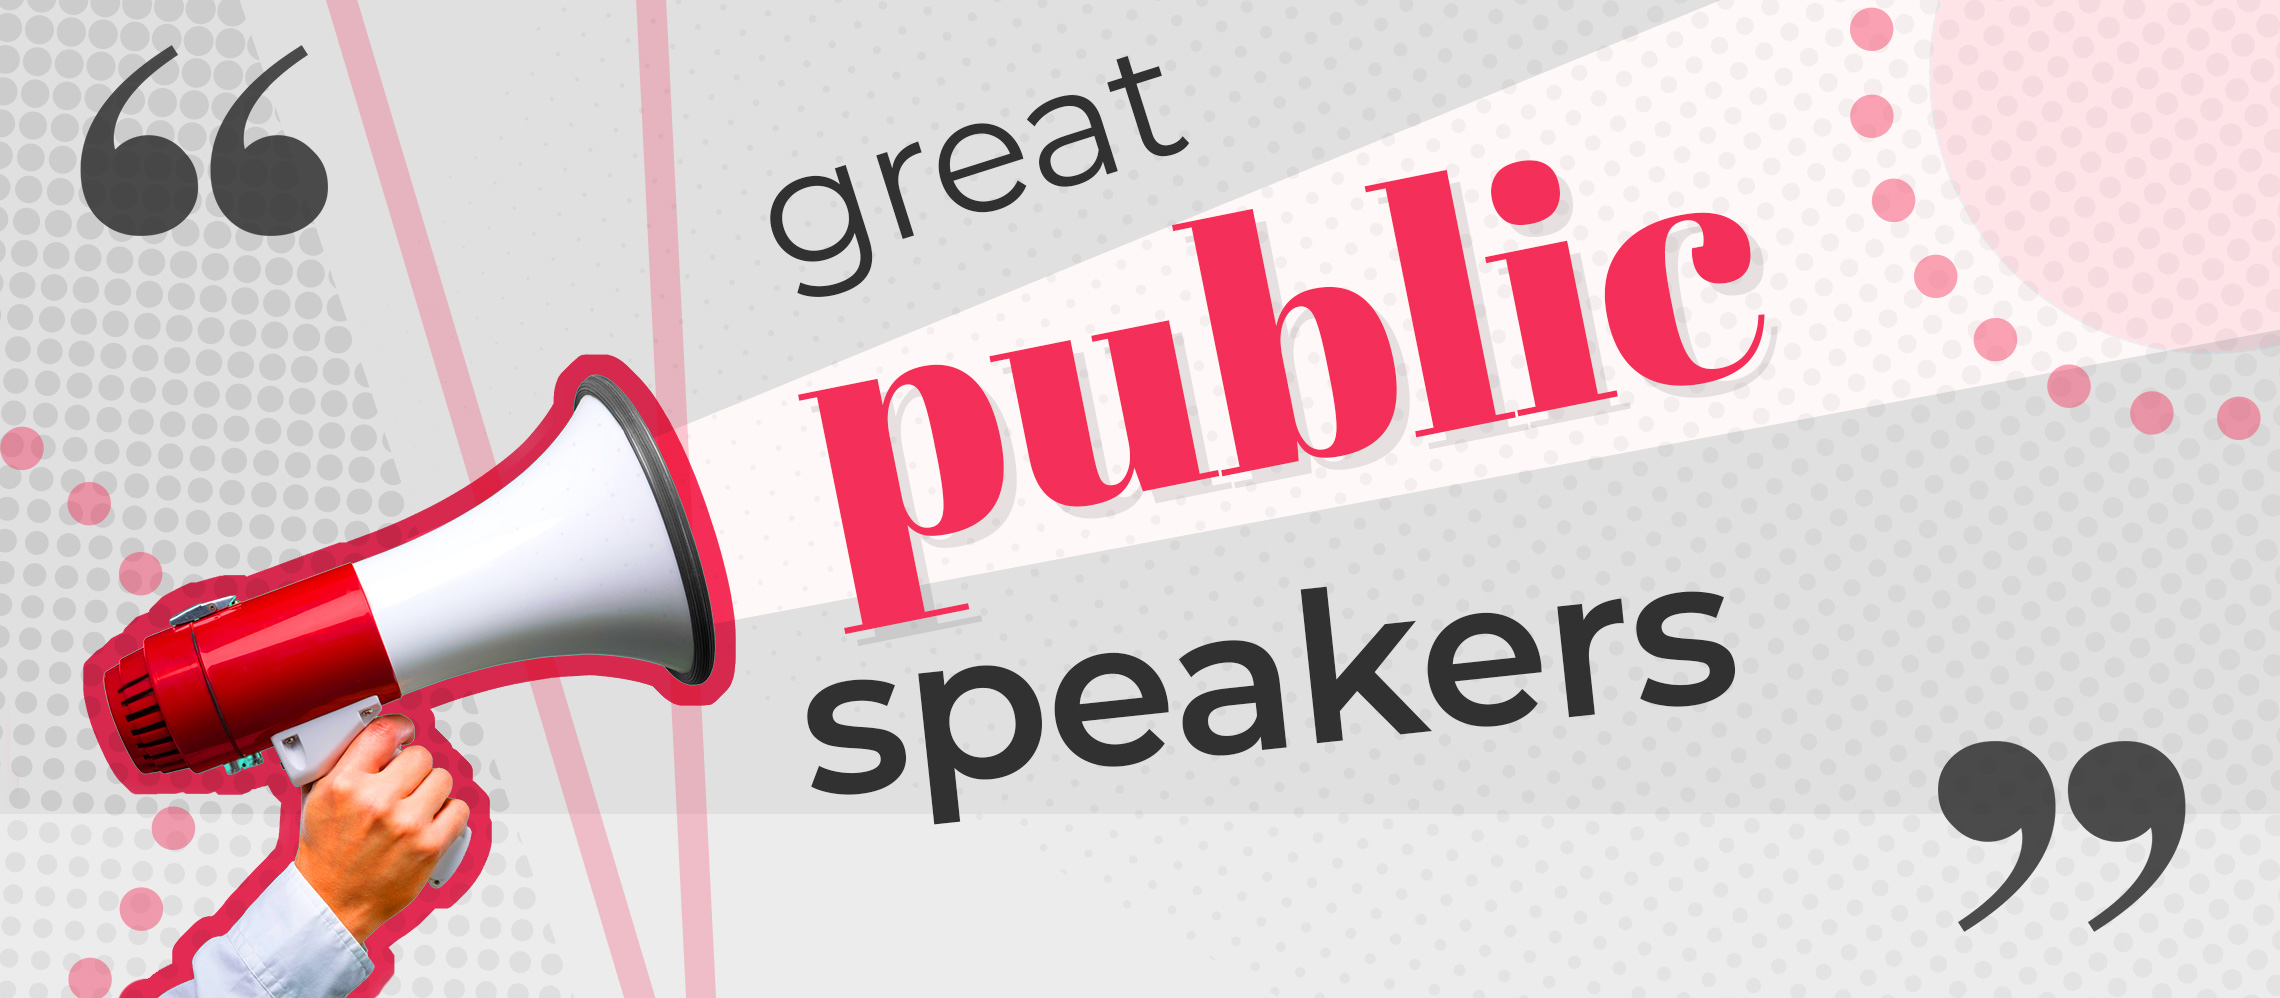 famous public speakers